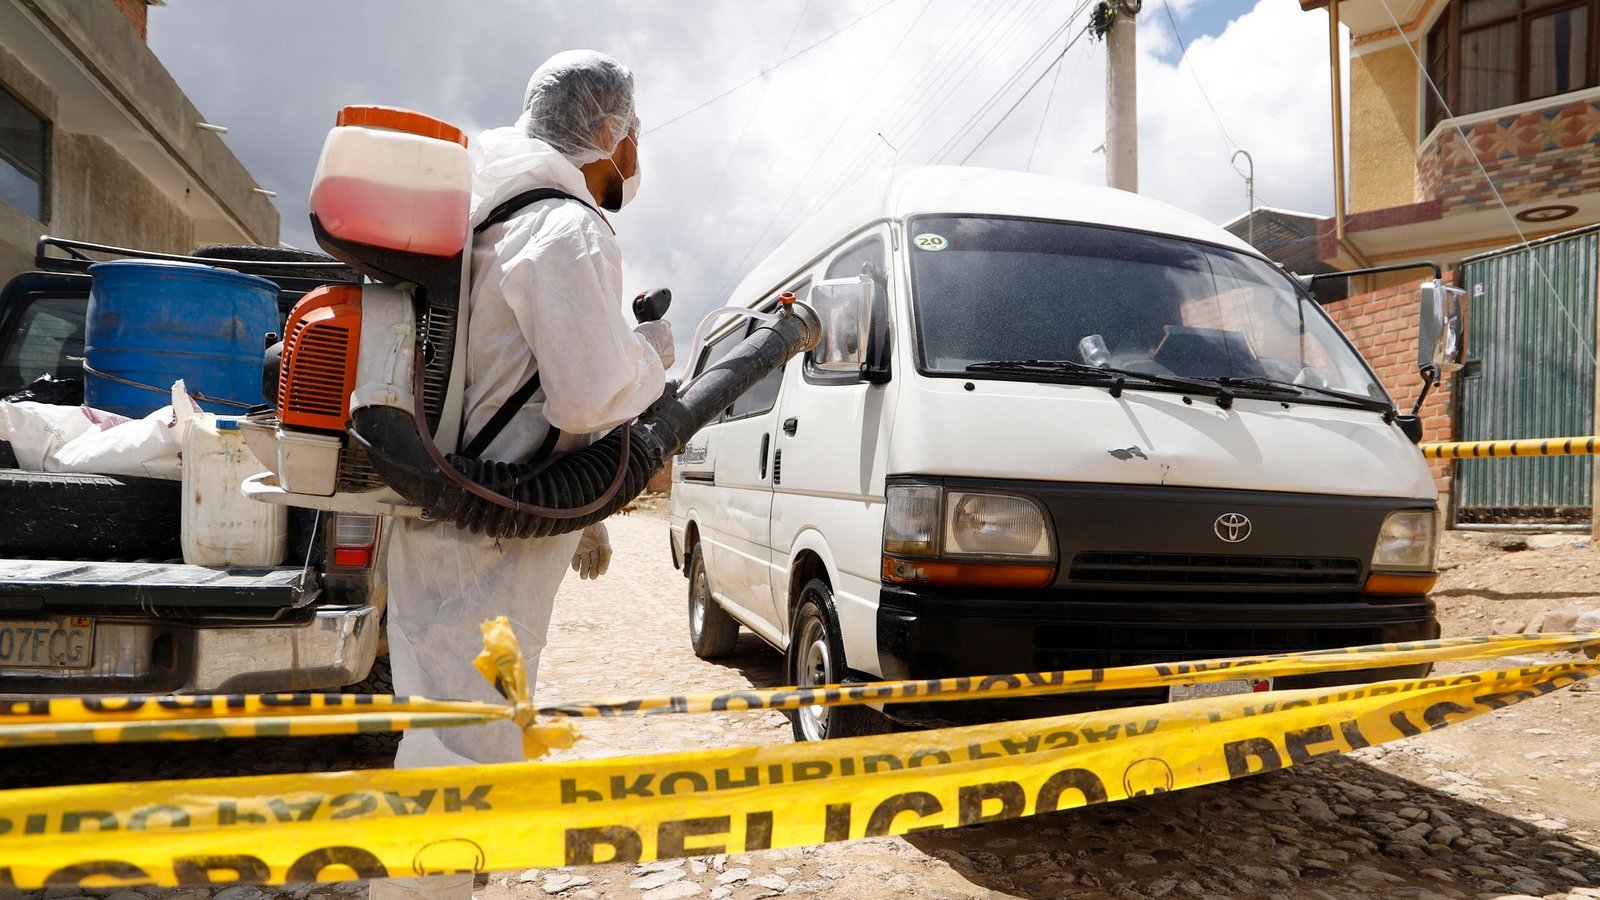 Ein Gesundheitsarbeiter in Schutzkleidung desinfiziert ein Auto in der bolivianischen Stadt Cochabamba. Dort wurde ein Vogelgrippe-Ausbruch festgestellt.Foto: David Flores/dpa